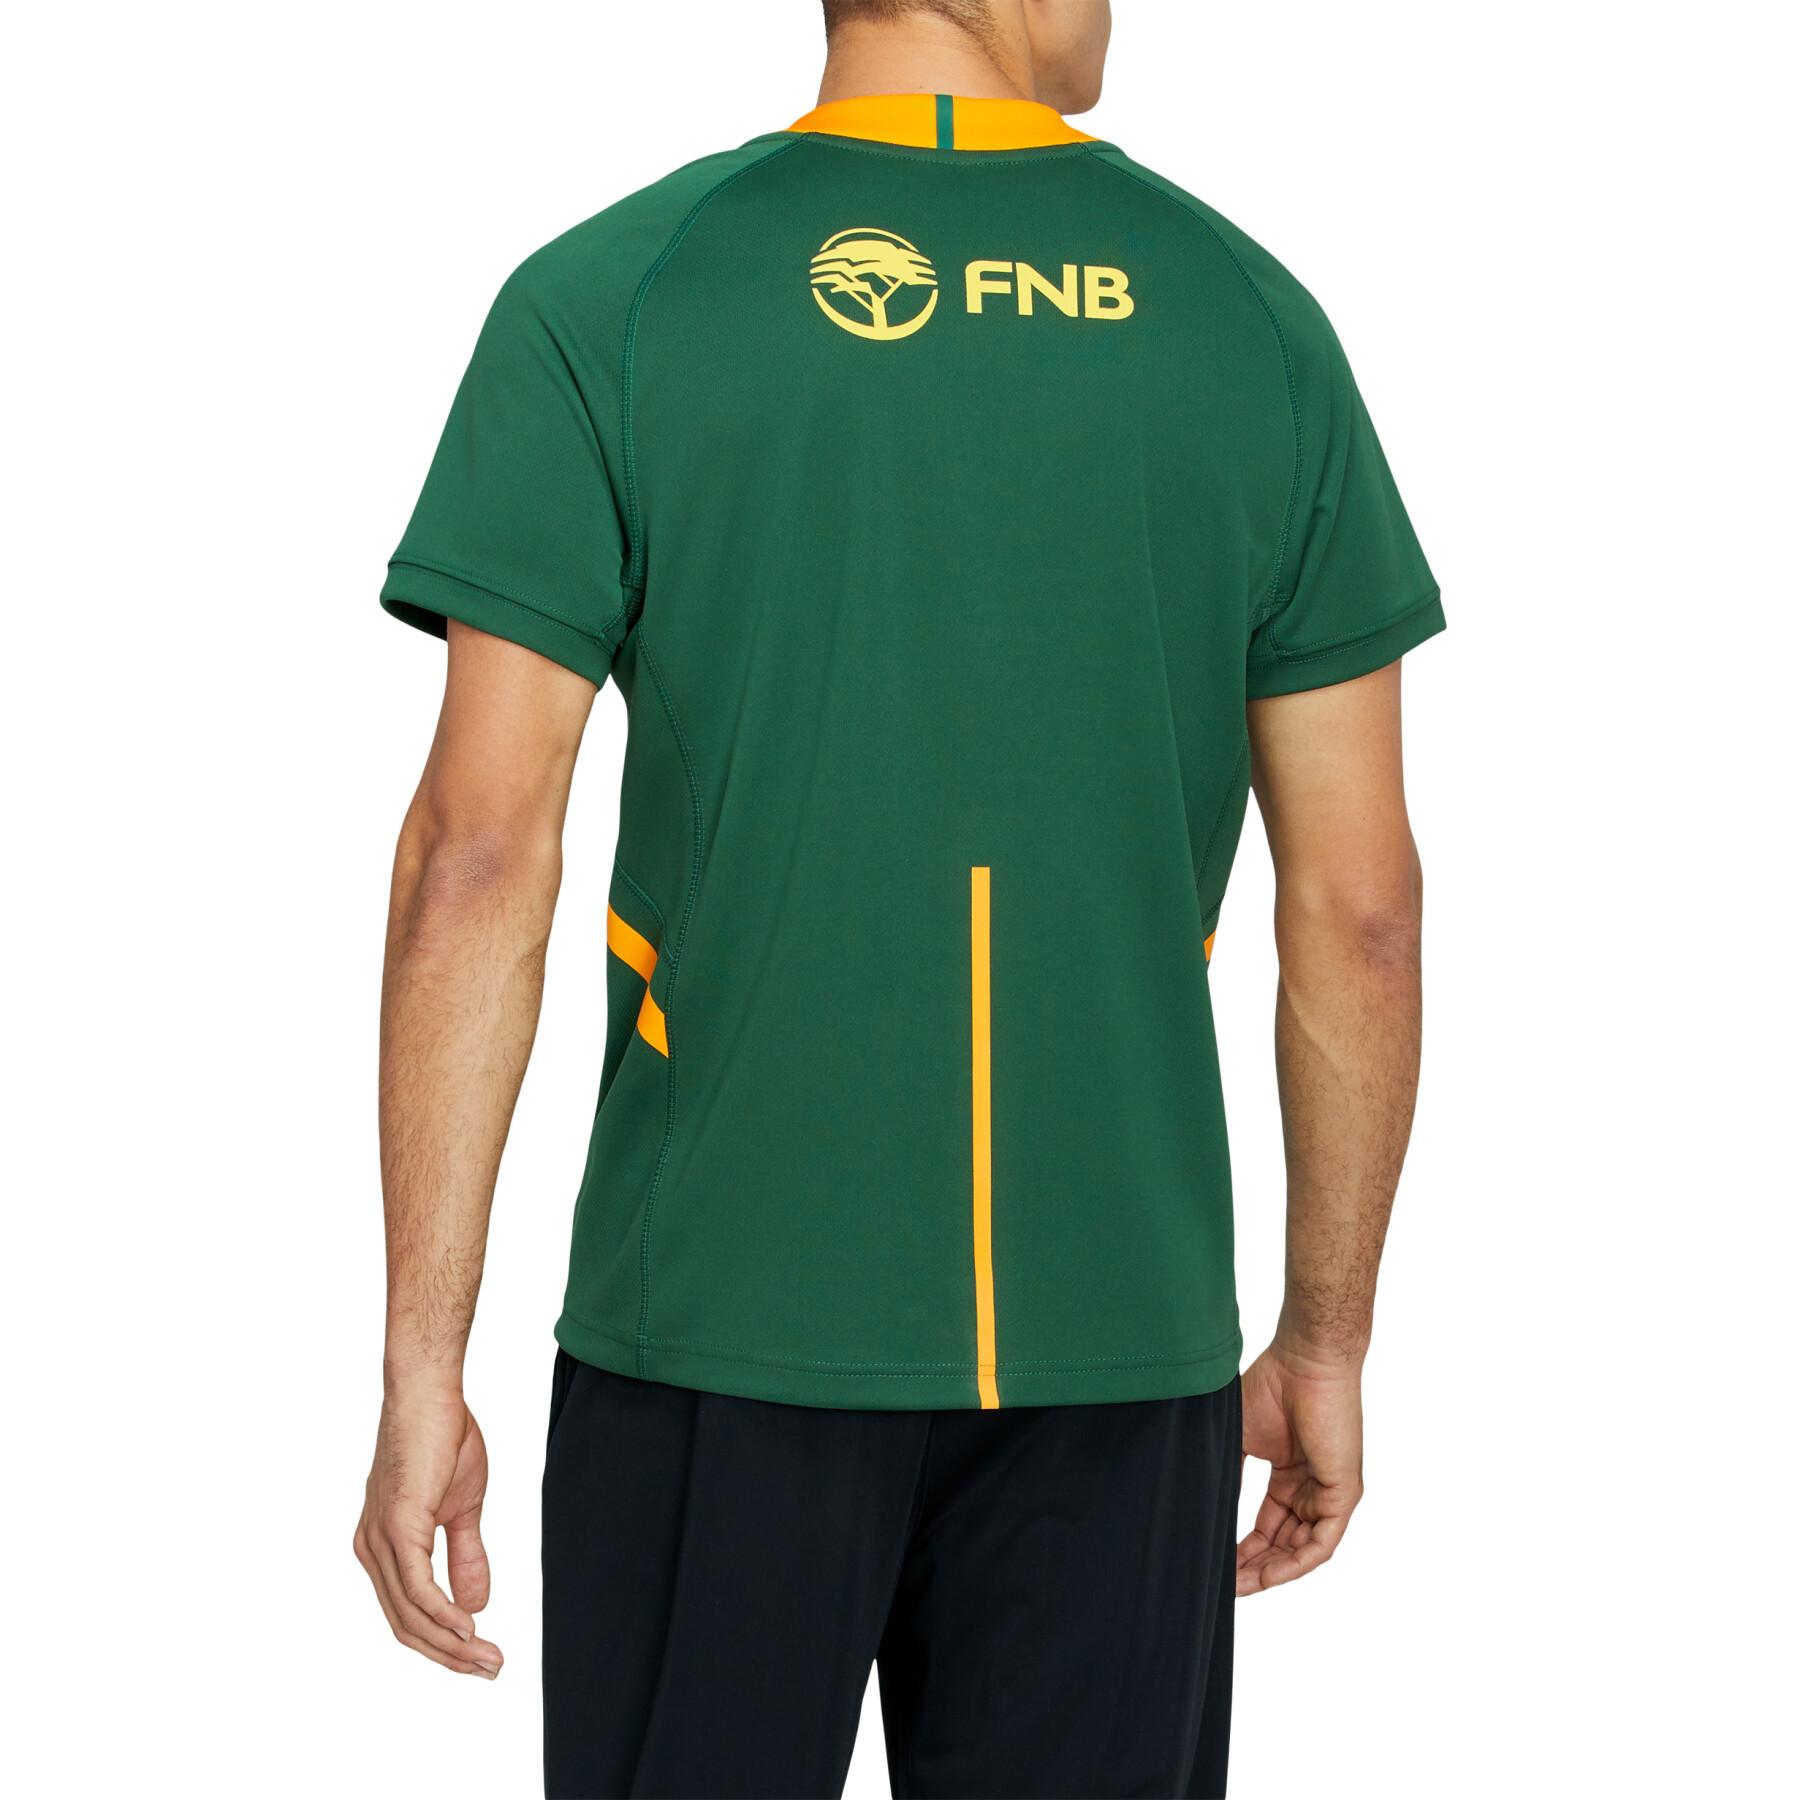 Camiseta de exterior de los Springboks de Sudáfrica